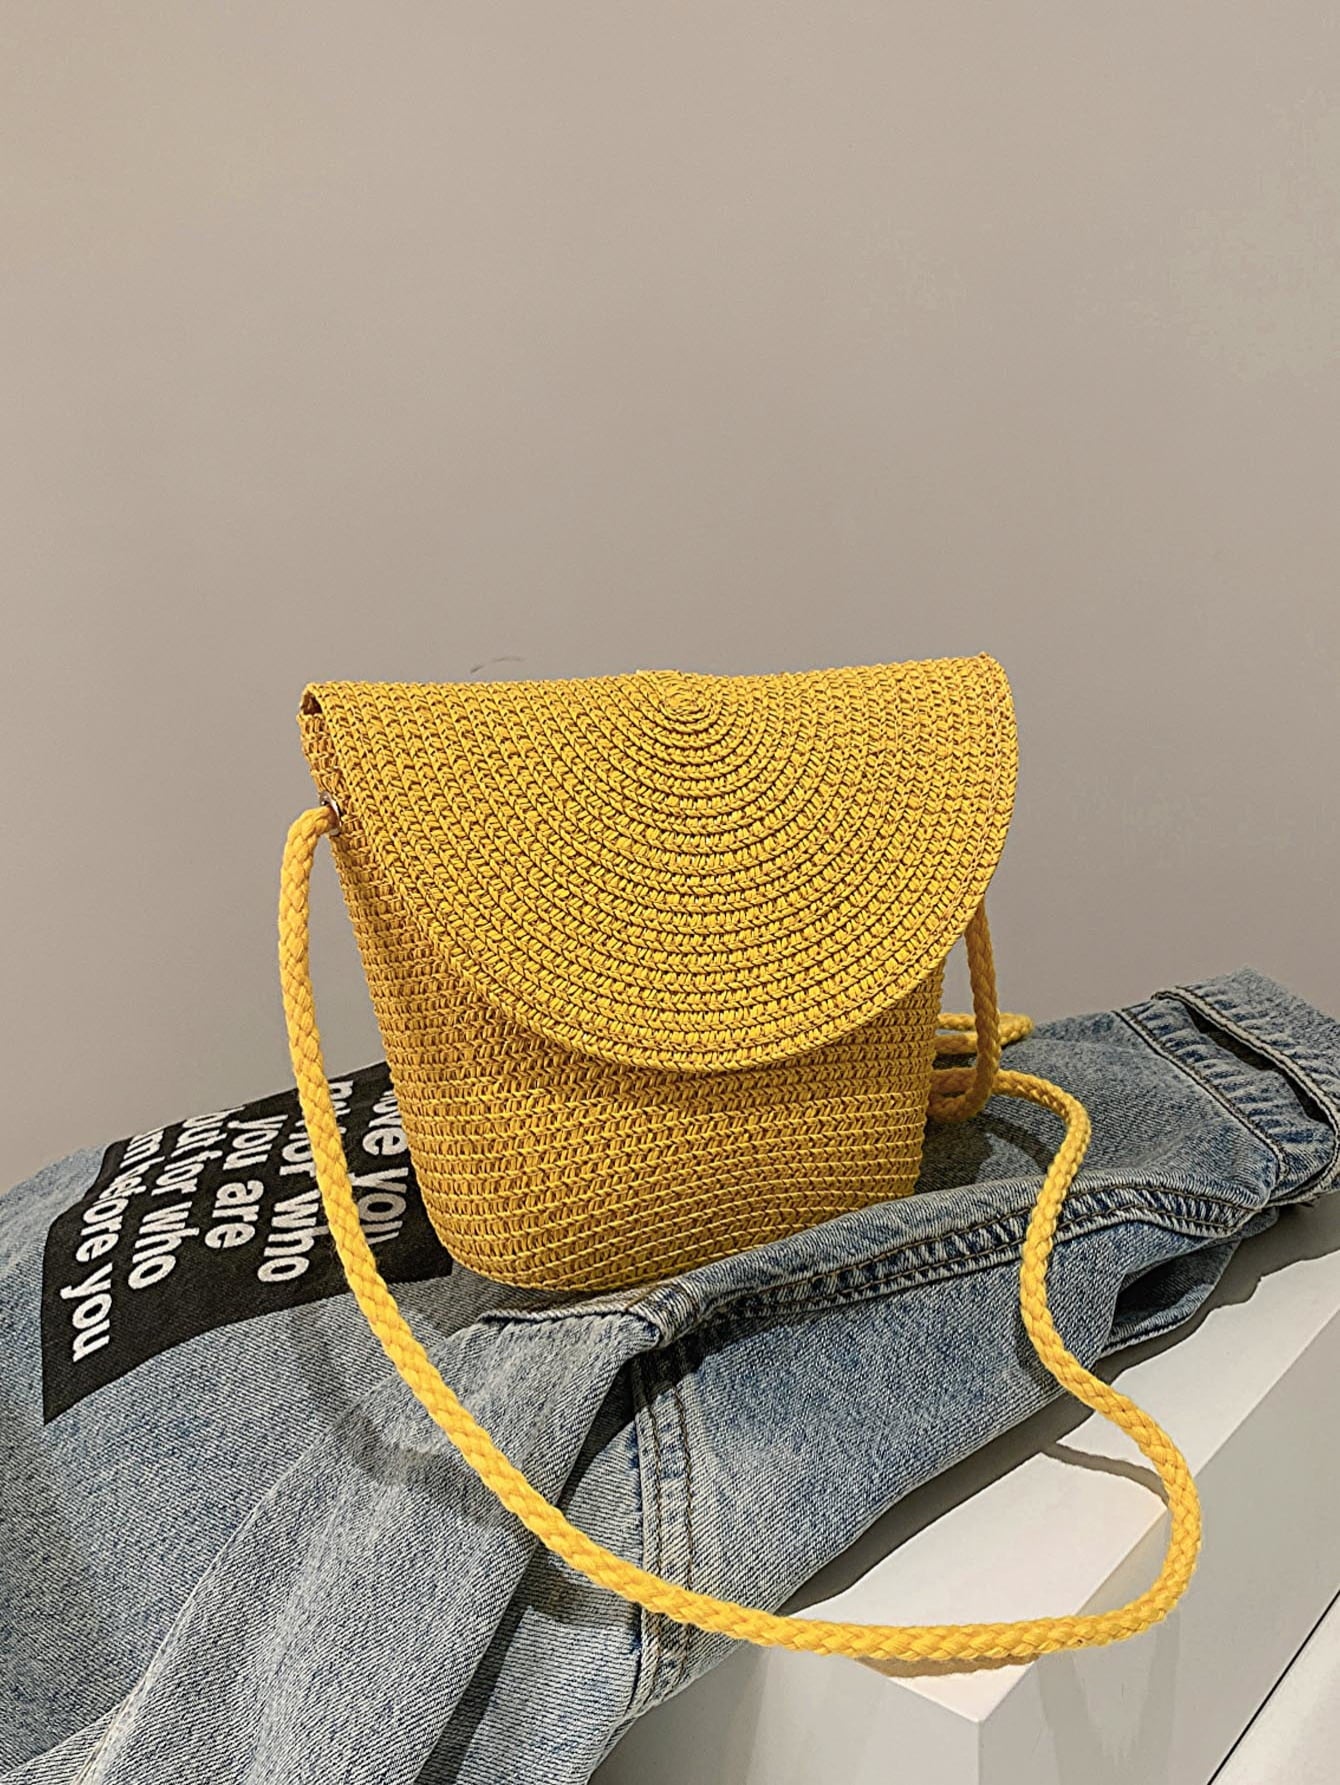 crochet shoulder handbag, mustard, front-view, on light blue denim jacket